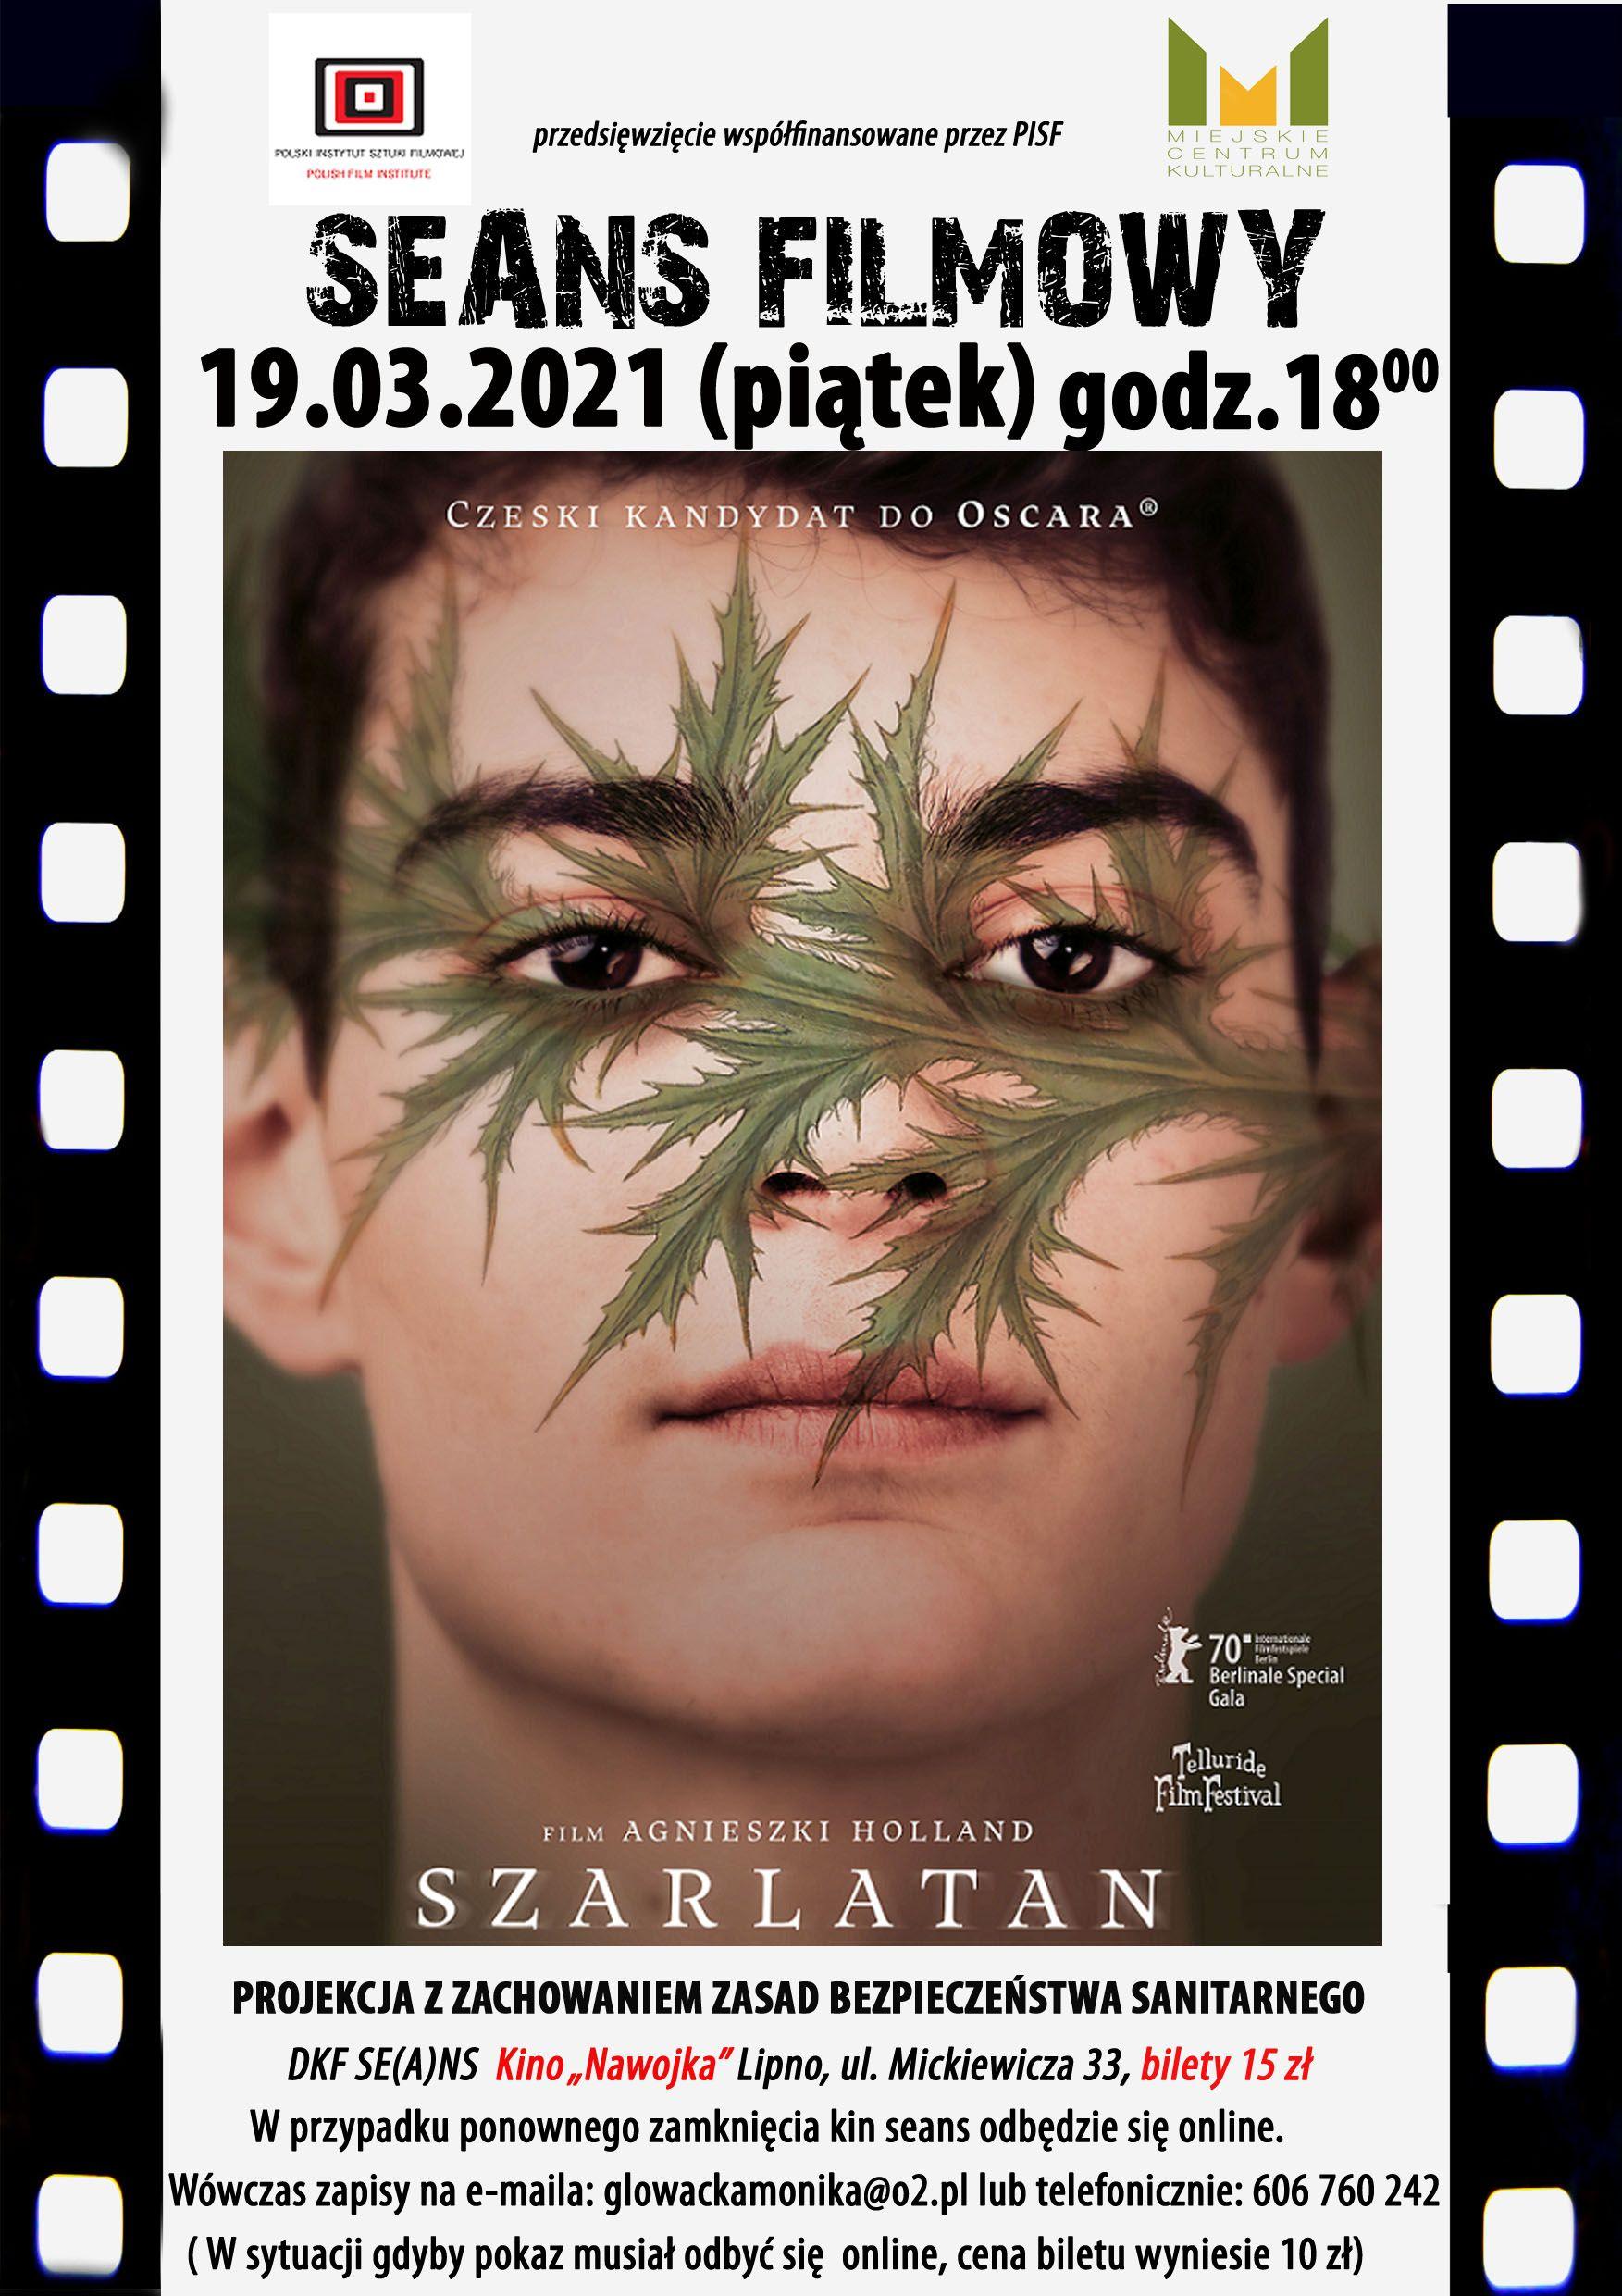 DKF „Se(a)ns” zaprasza 19 marca o godz. 18:00 na film Agnieszki Holland „Szarlatan” (czeski kandydat do tegorocznego Oscara)